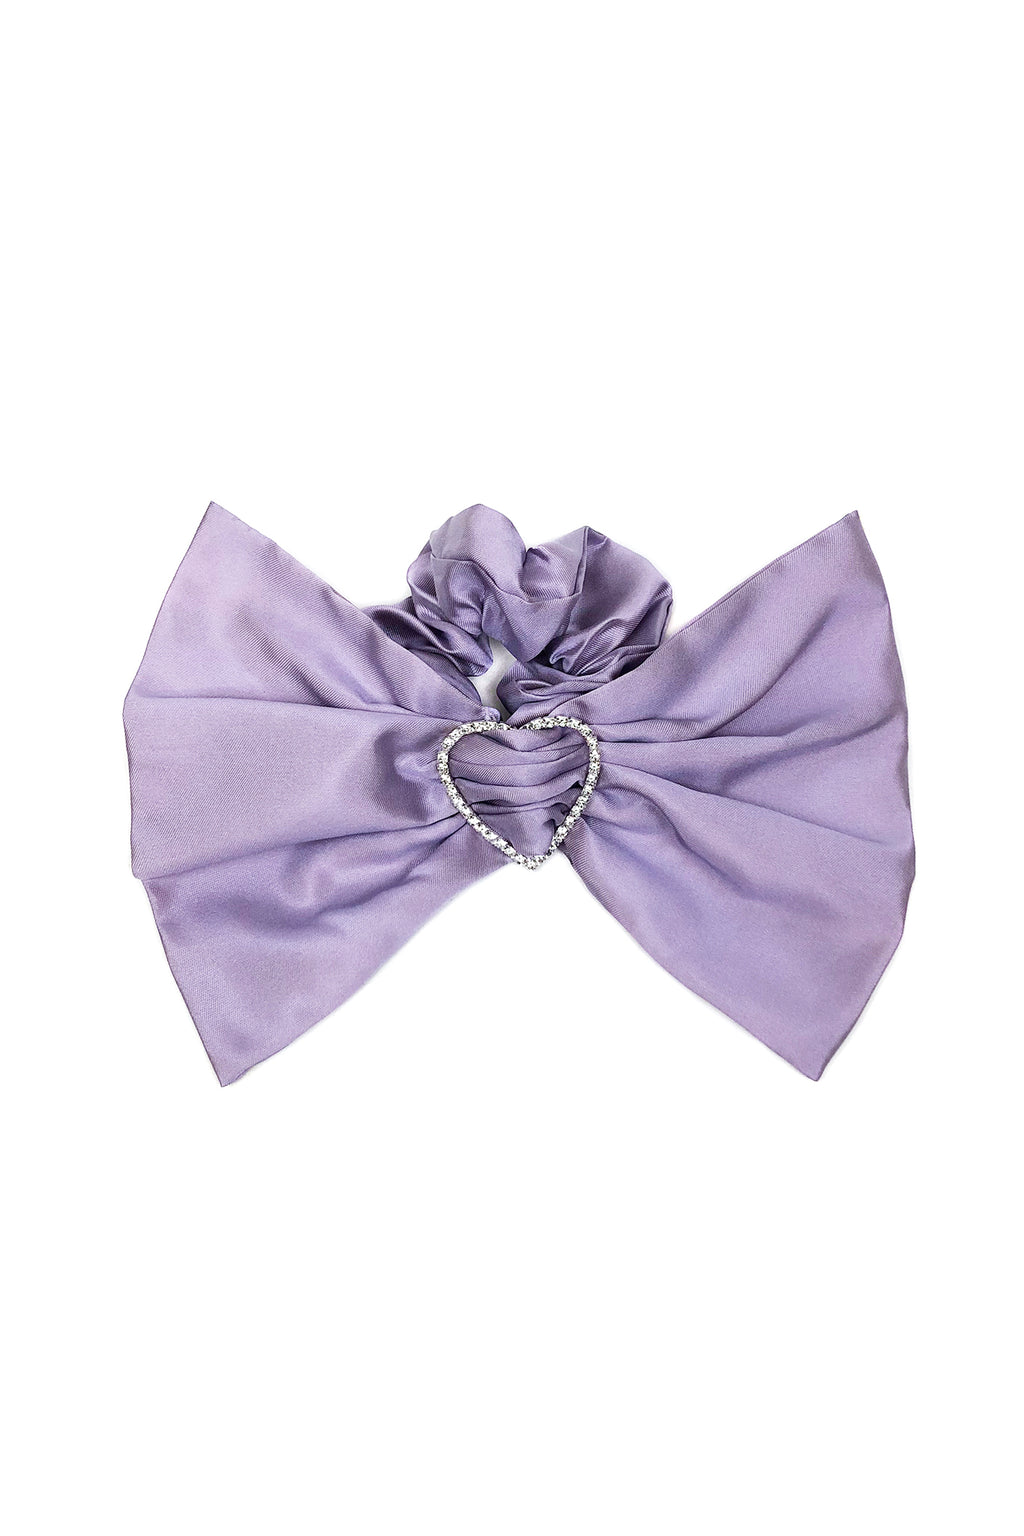 Merrfer BIG Bow Scrunchie, Lilac